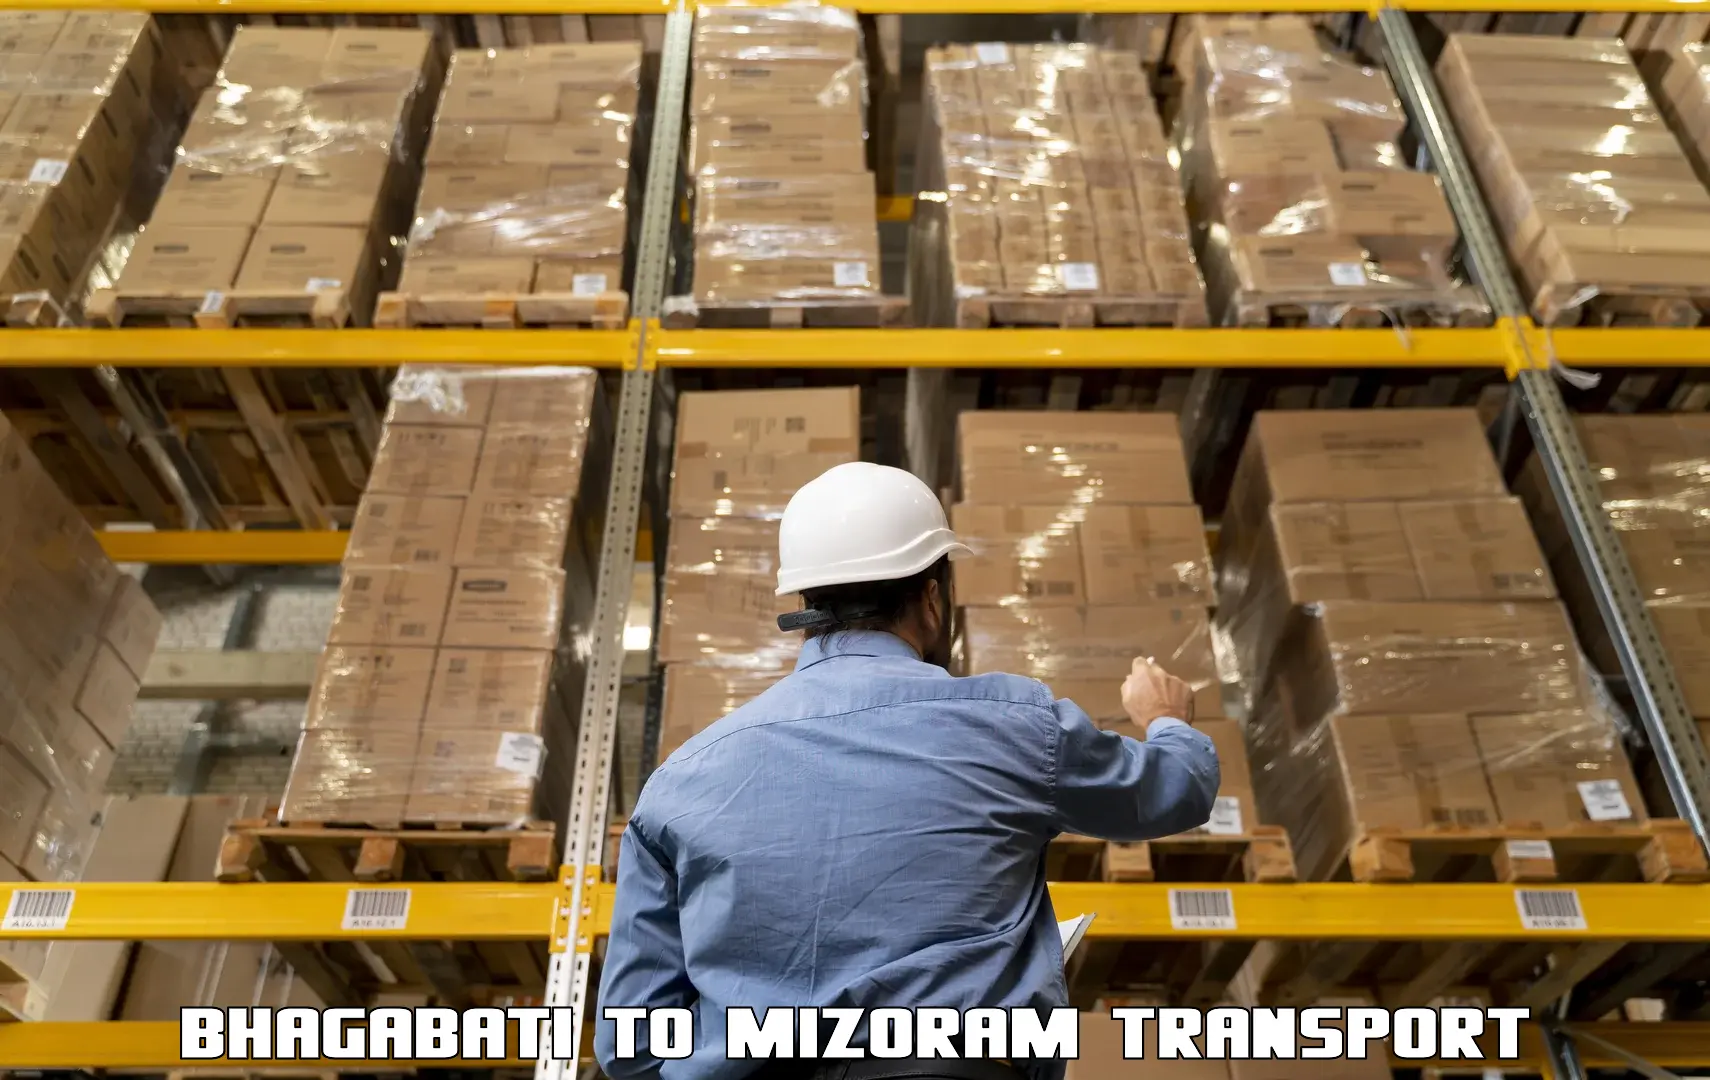 Part load transport service in India Bhagabati to Mizoram